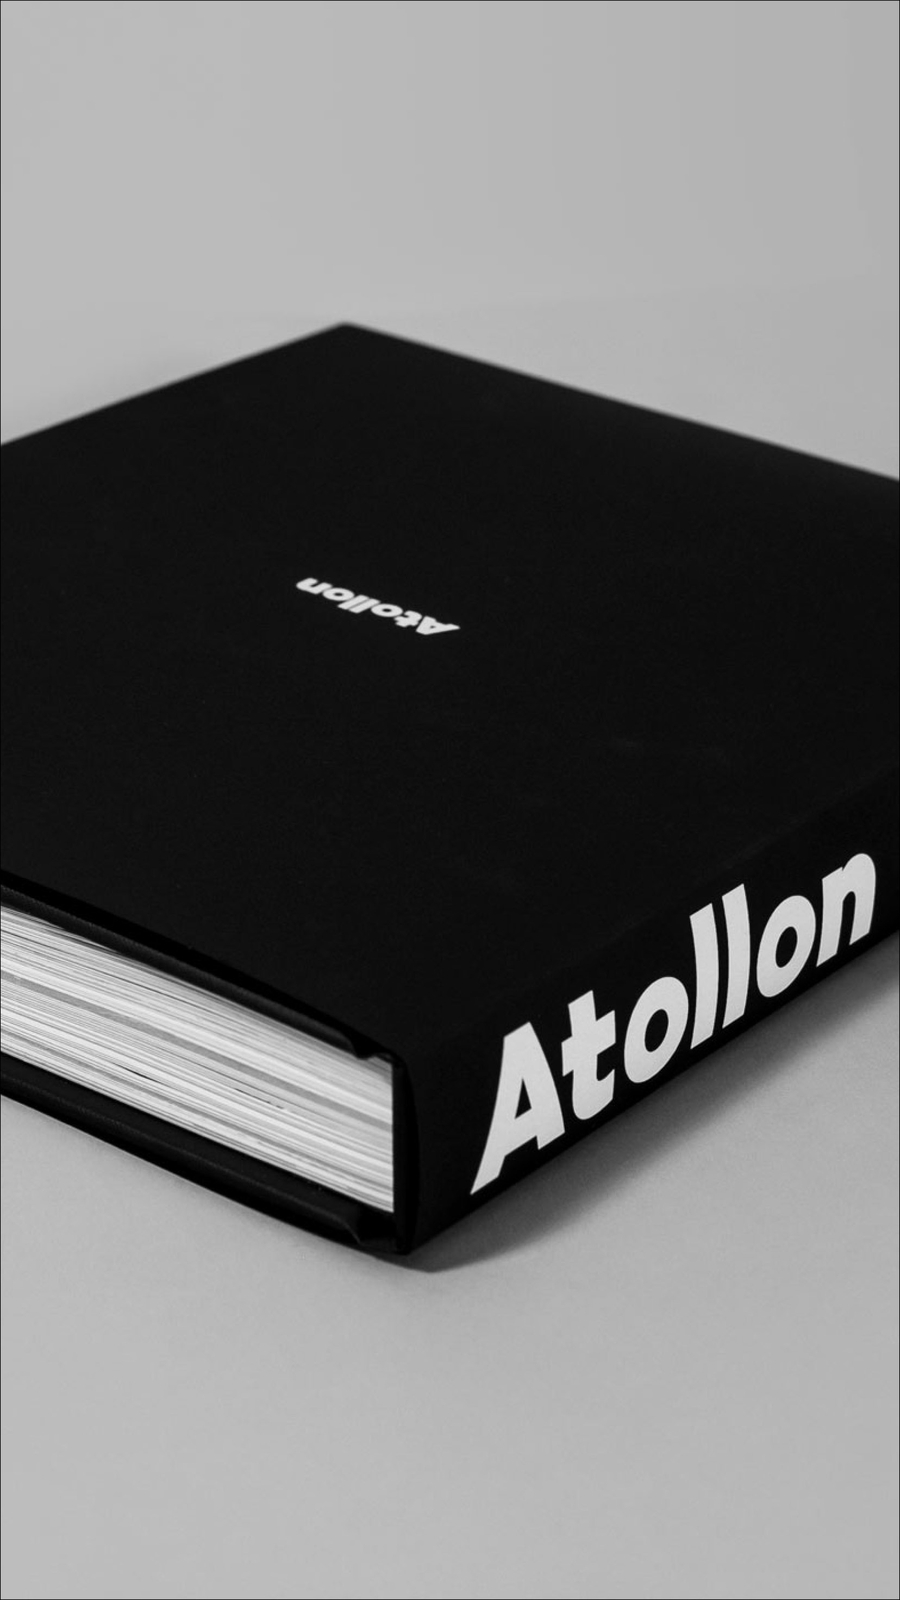 Atollon Brand Book - Culture Document | Atollon - a design company